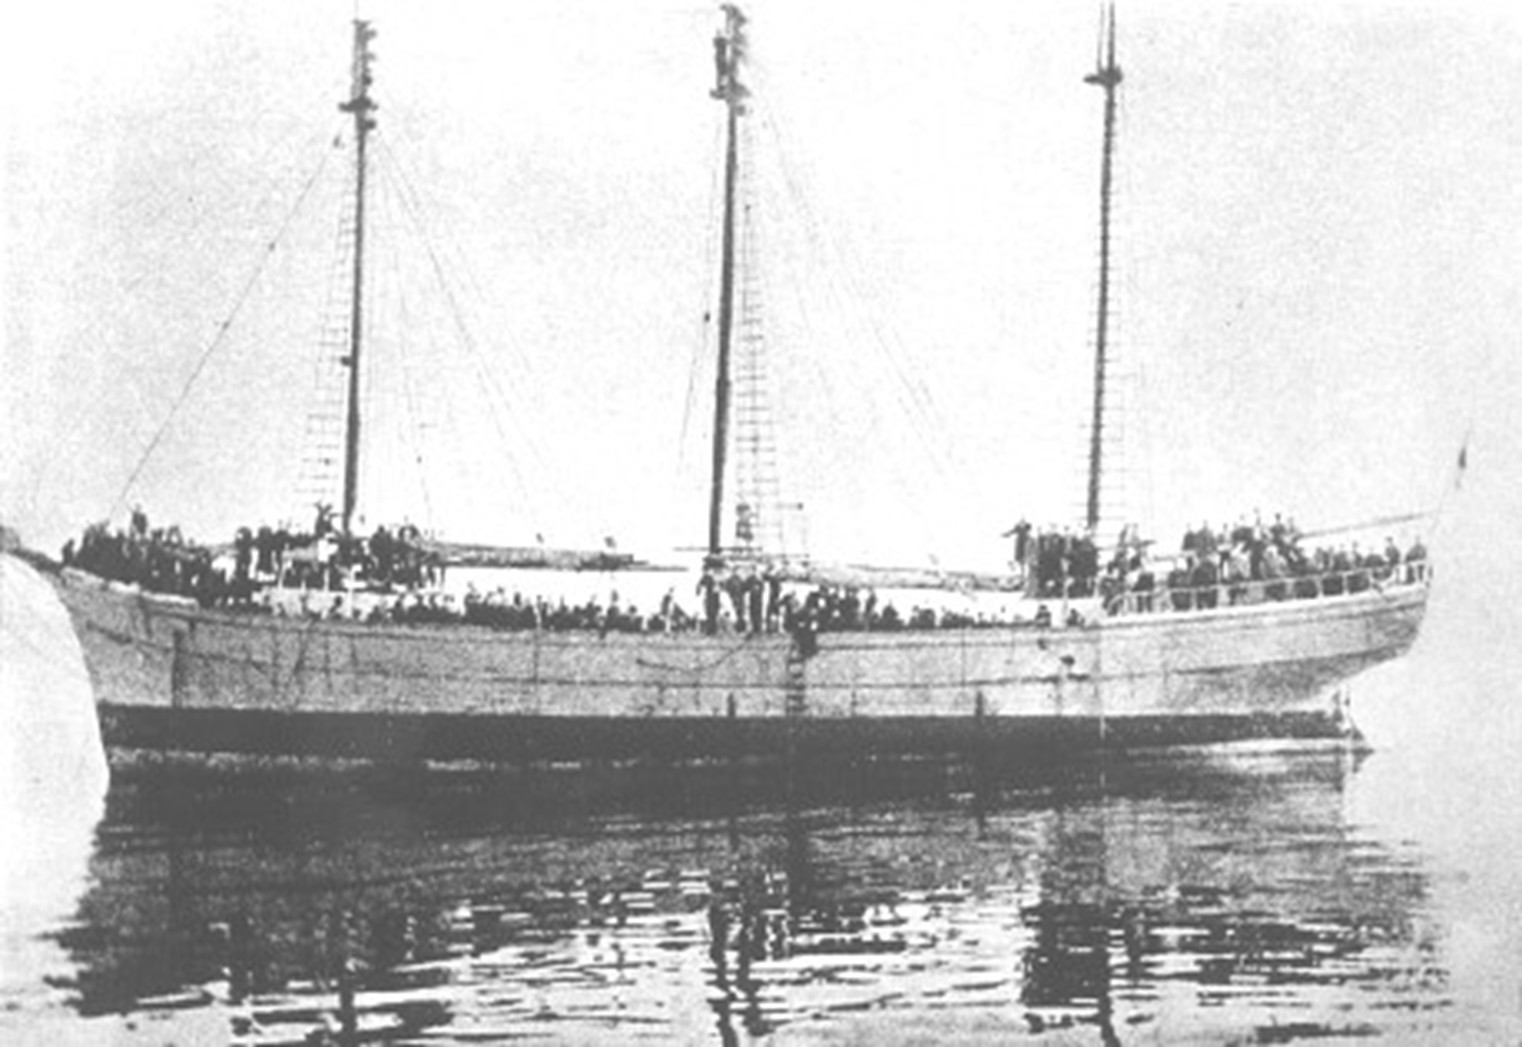 Mootorkuunar 'Jaen Teär' Kadrioru rannas 28. augustil 1941, kui valvurid olid vange täis madalikule jooksnud laeva maha jätnud. Pildil on huvitav detail, nimelt on ahtris sinimustvalge lipp.